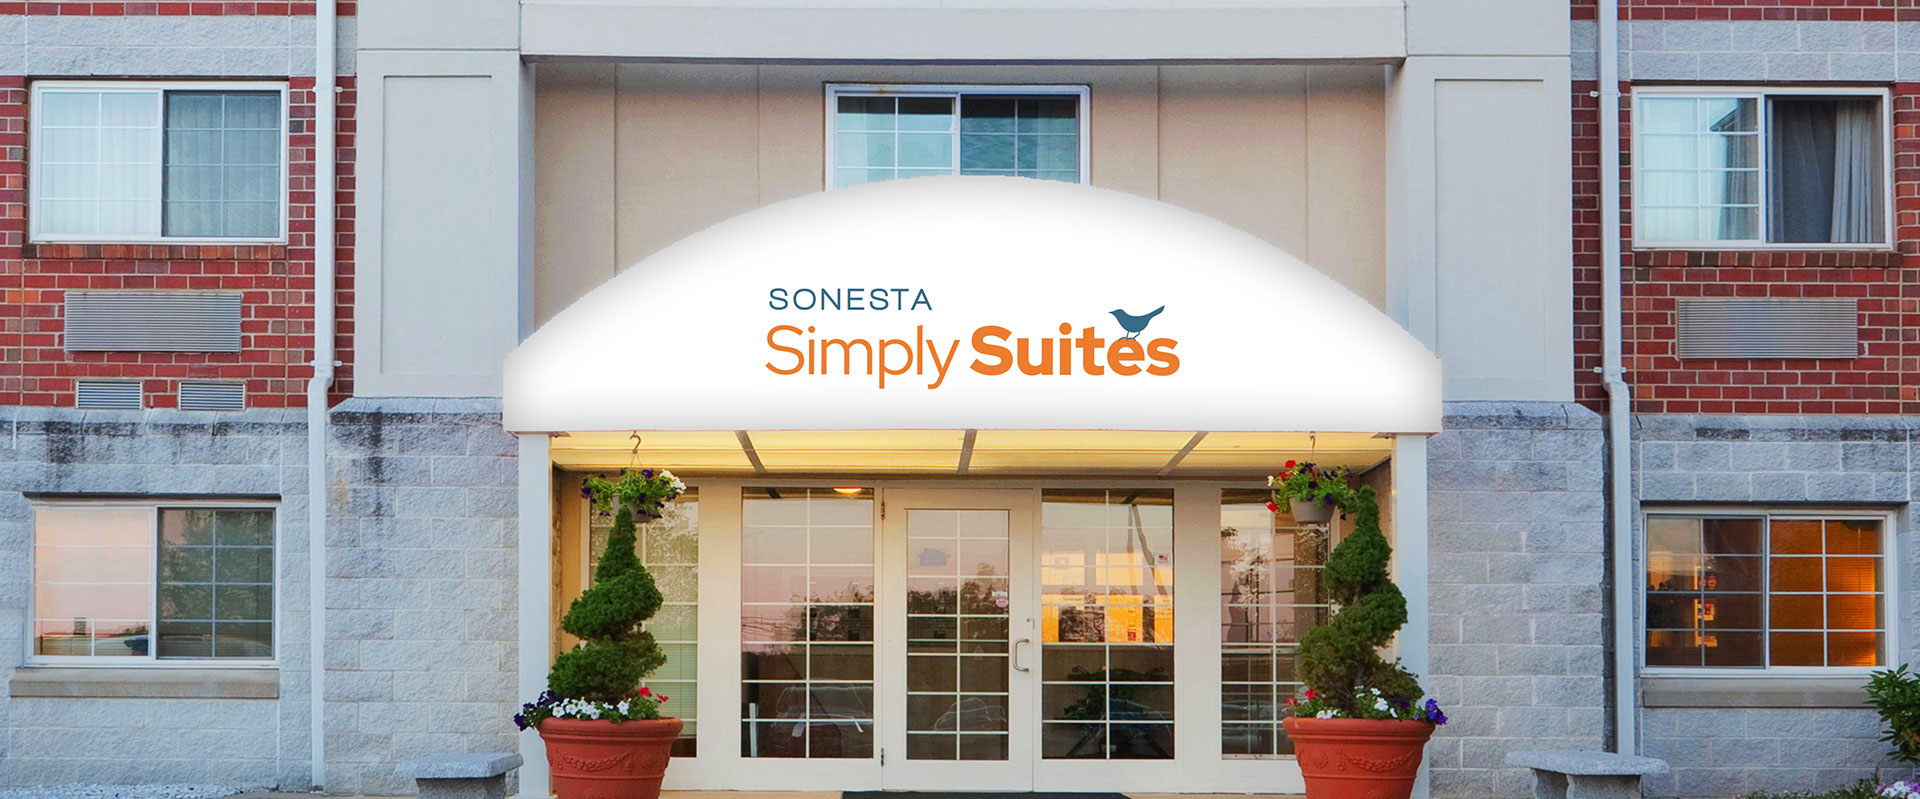 Sonesta Simply Suites Boston Burlington Hotel Exterior Entrance